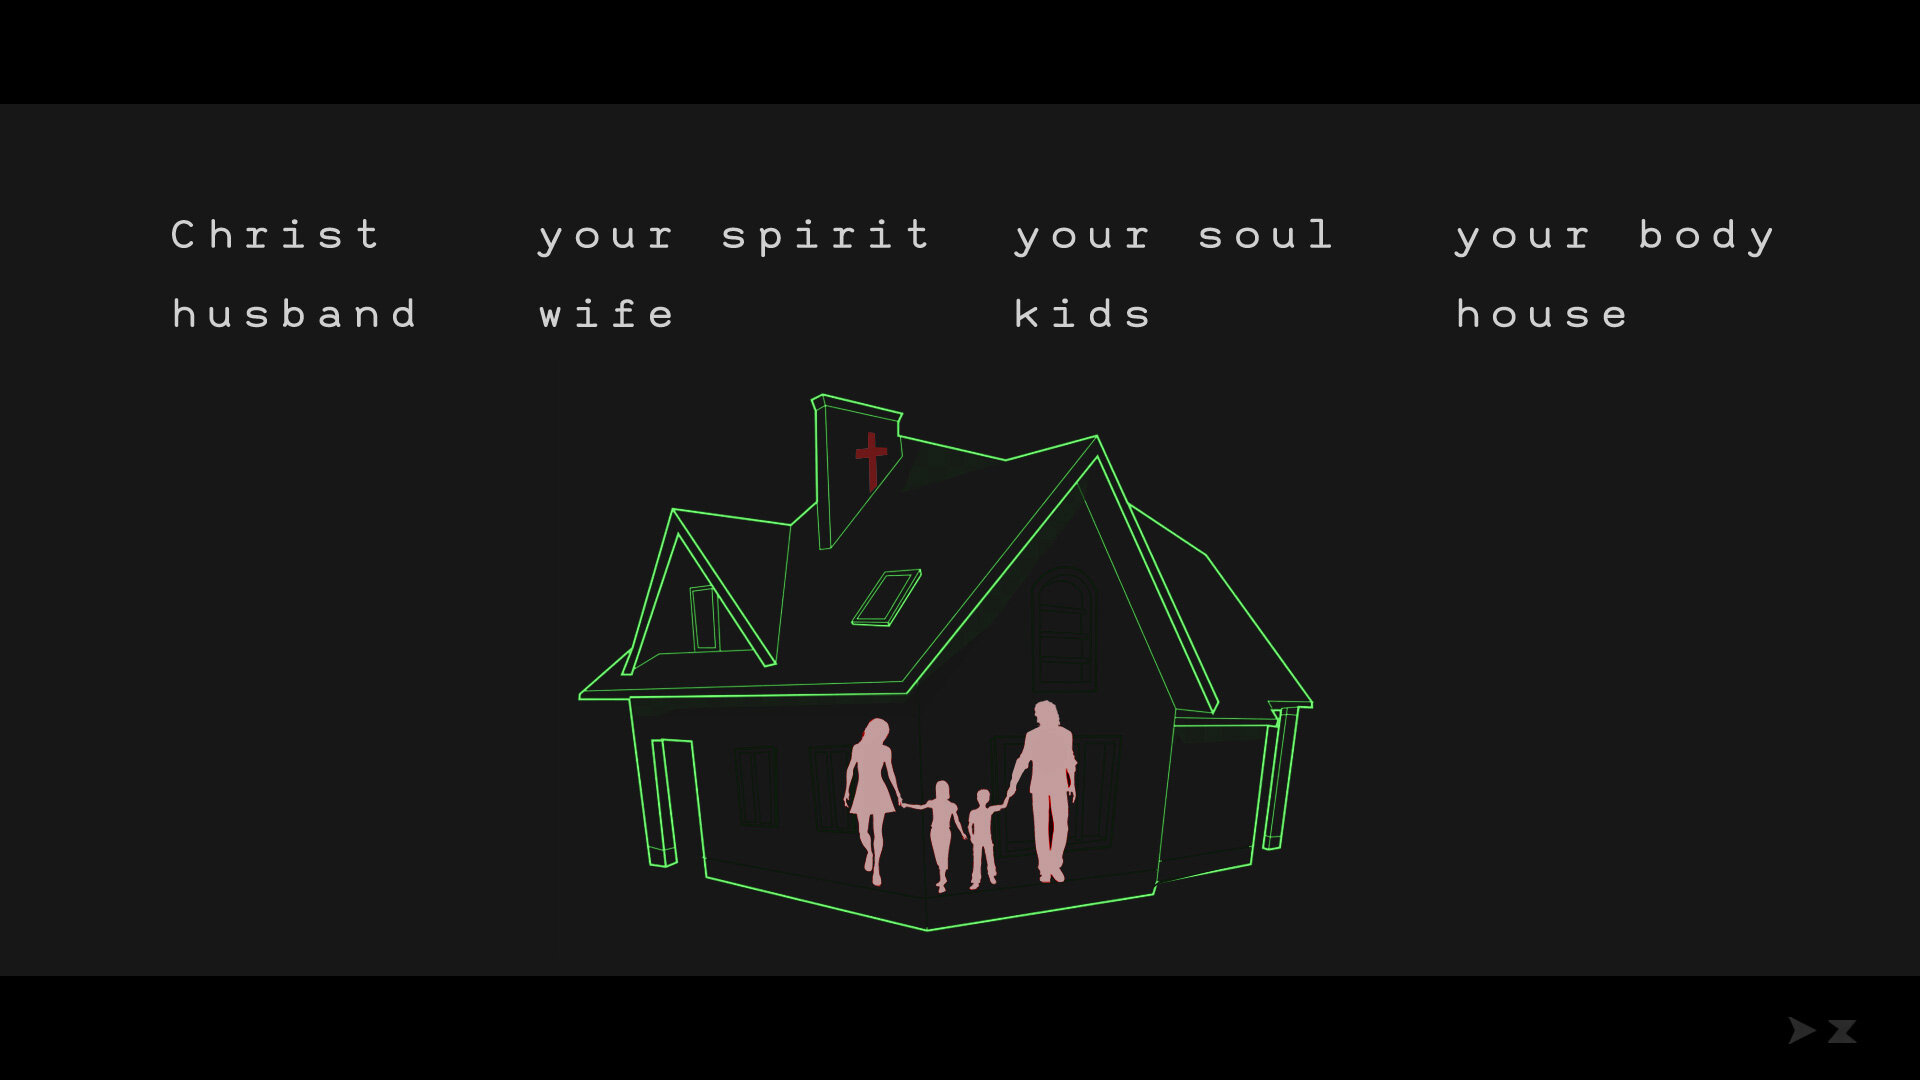 02_spirit-soul-body_house.jpg